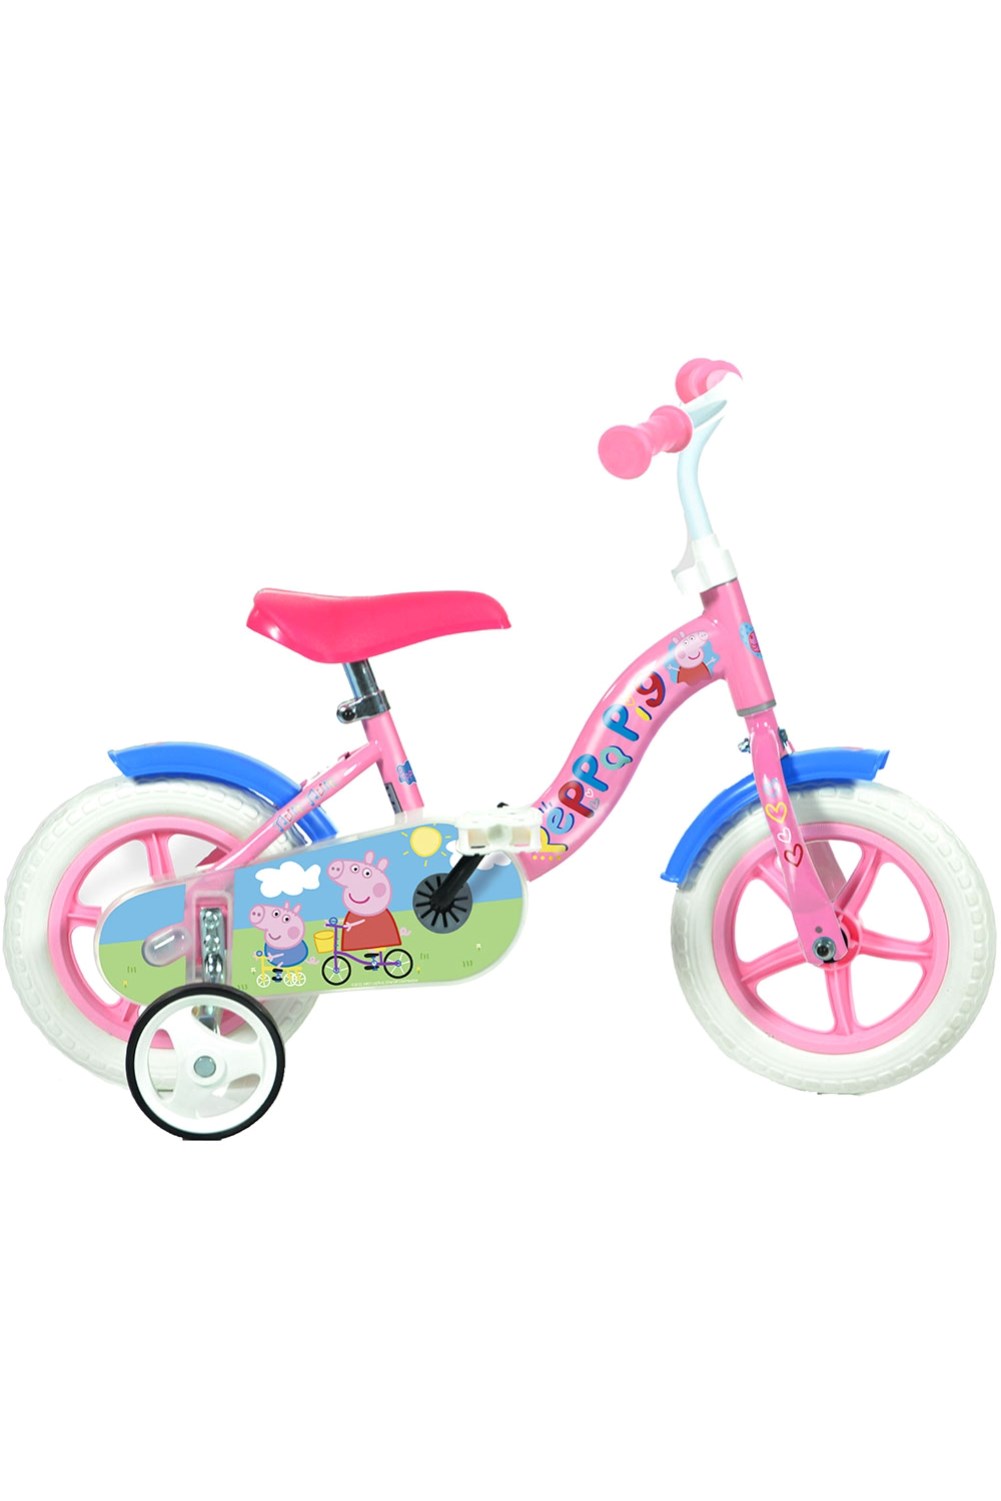 Peppa Pig 10" Kids Bike -